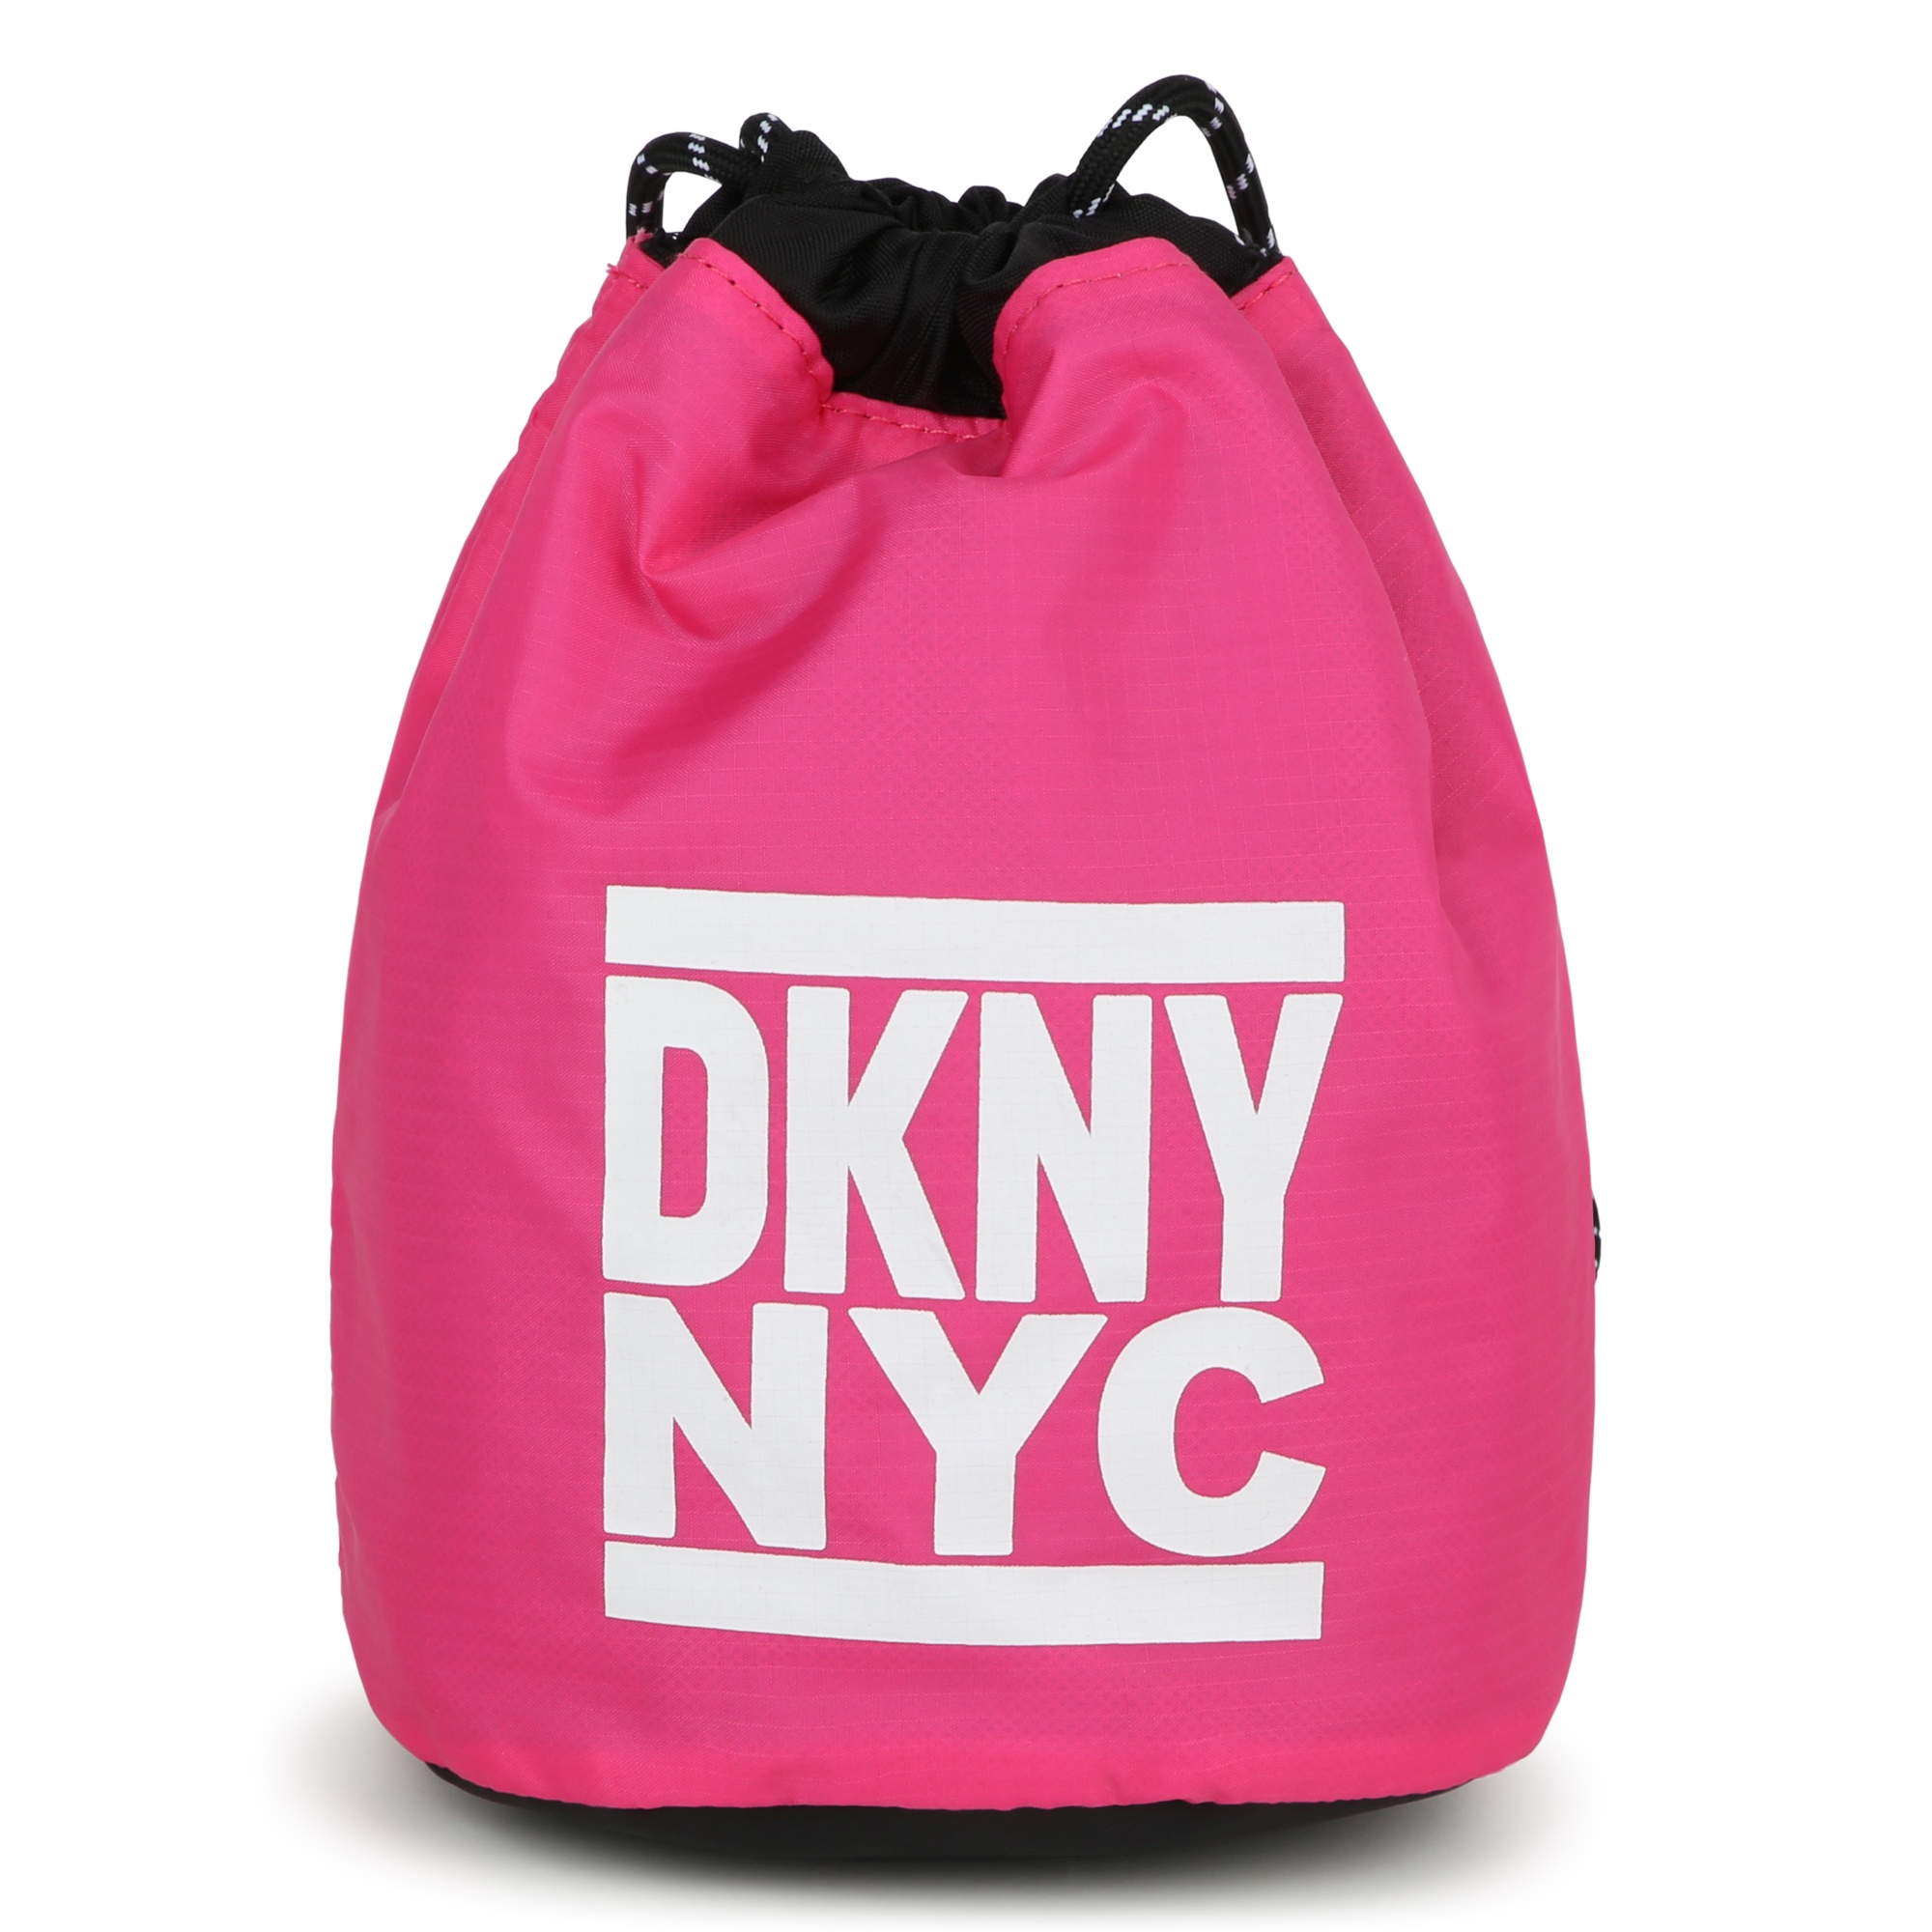 Omkeerbare handtas DKNY Voor